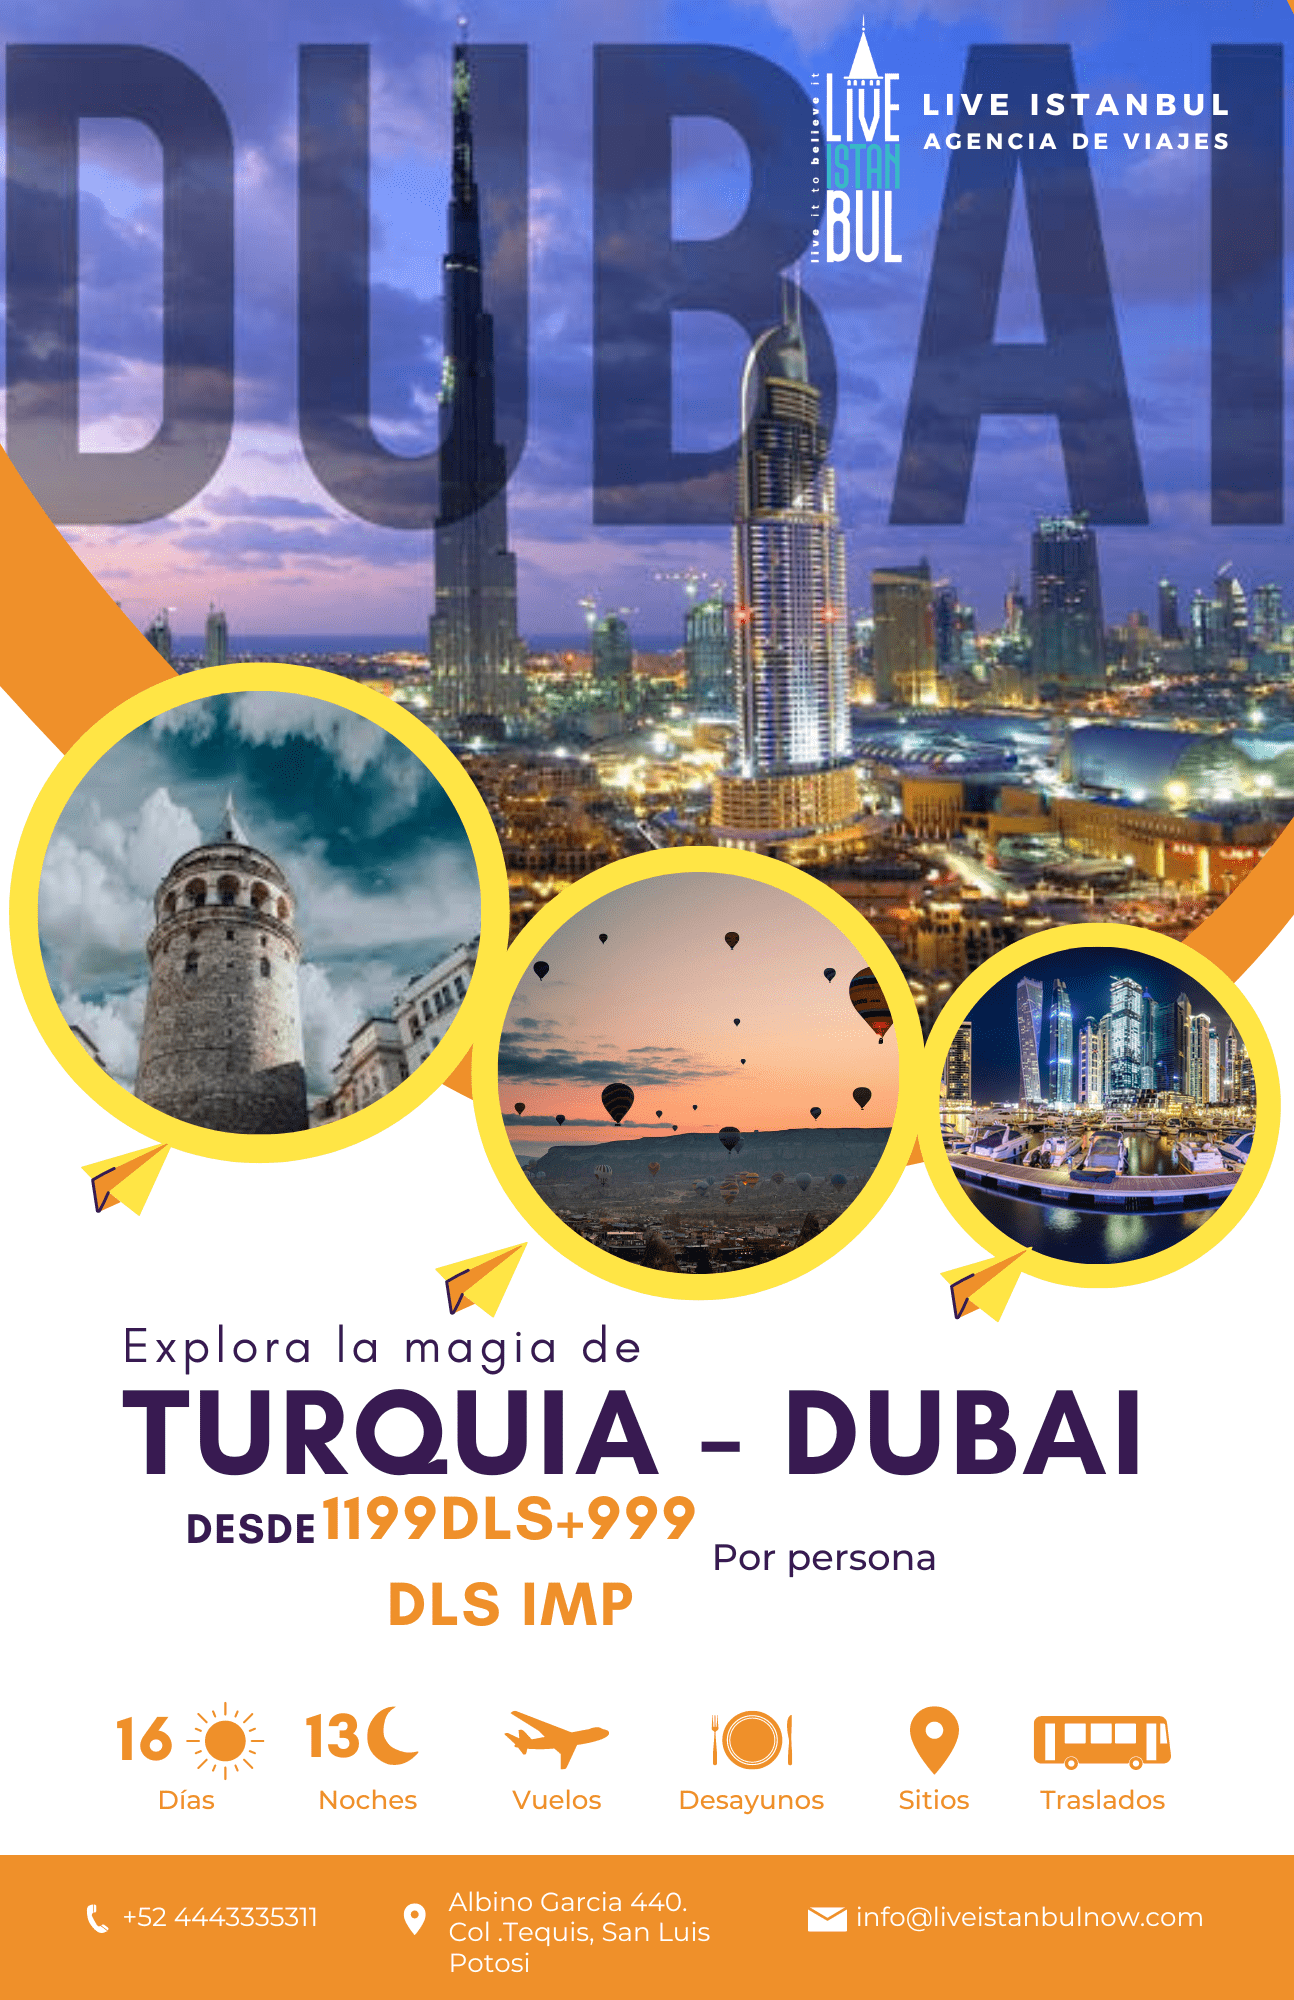 TOURS DUBAI TURQUİA